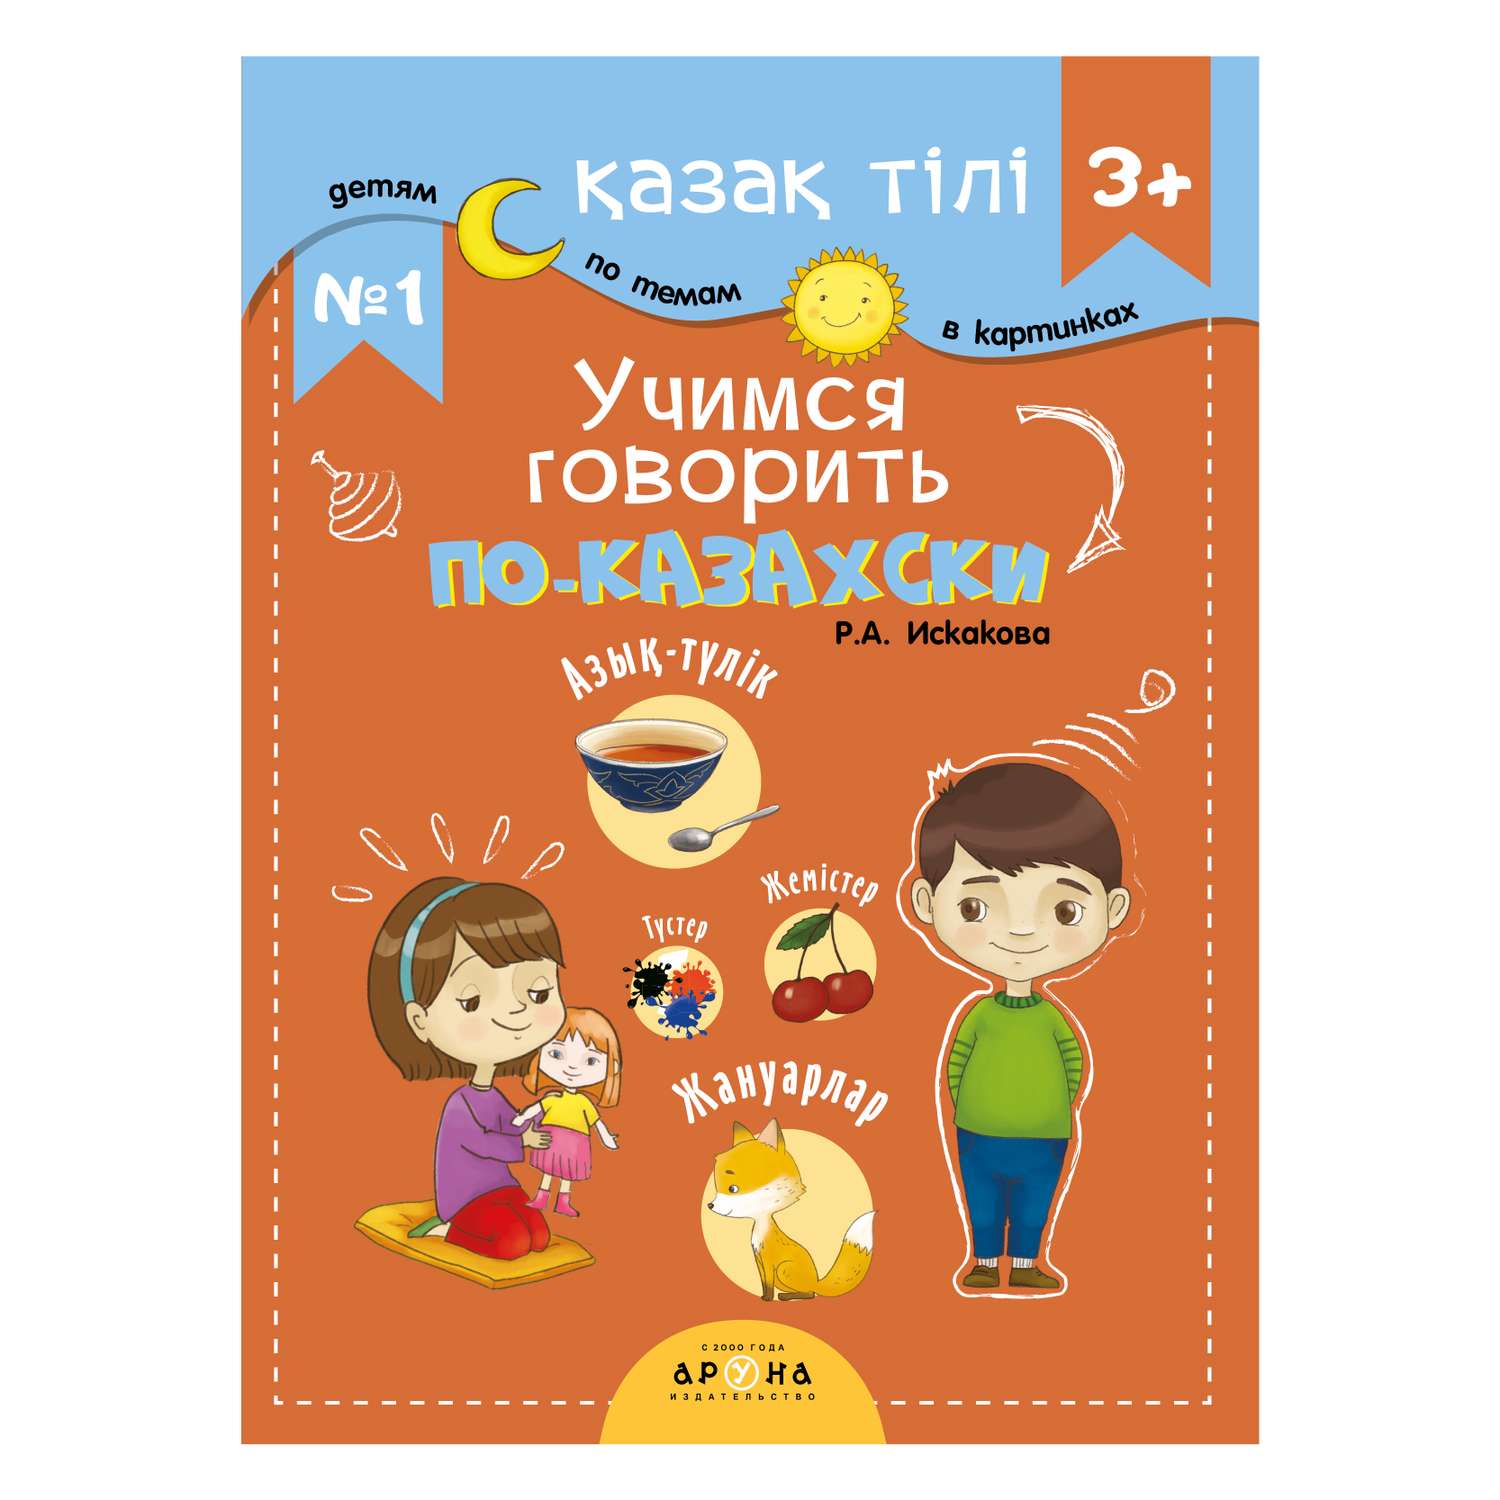 Книга Разговорник 3+ №1 Казахский язык - фото 1